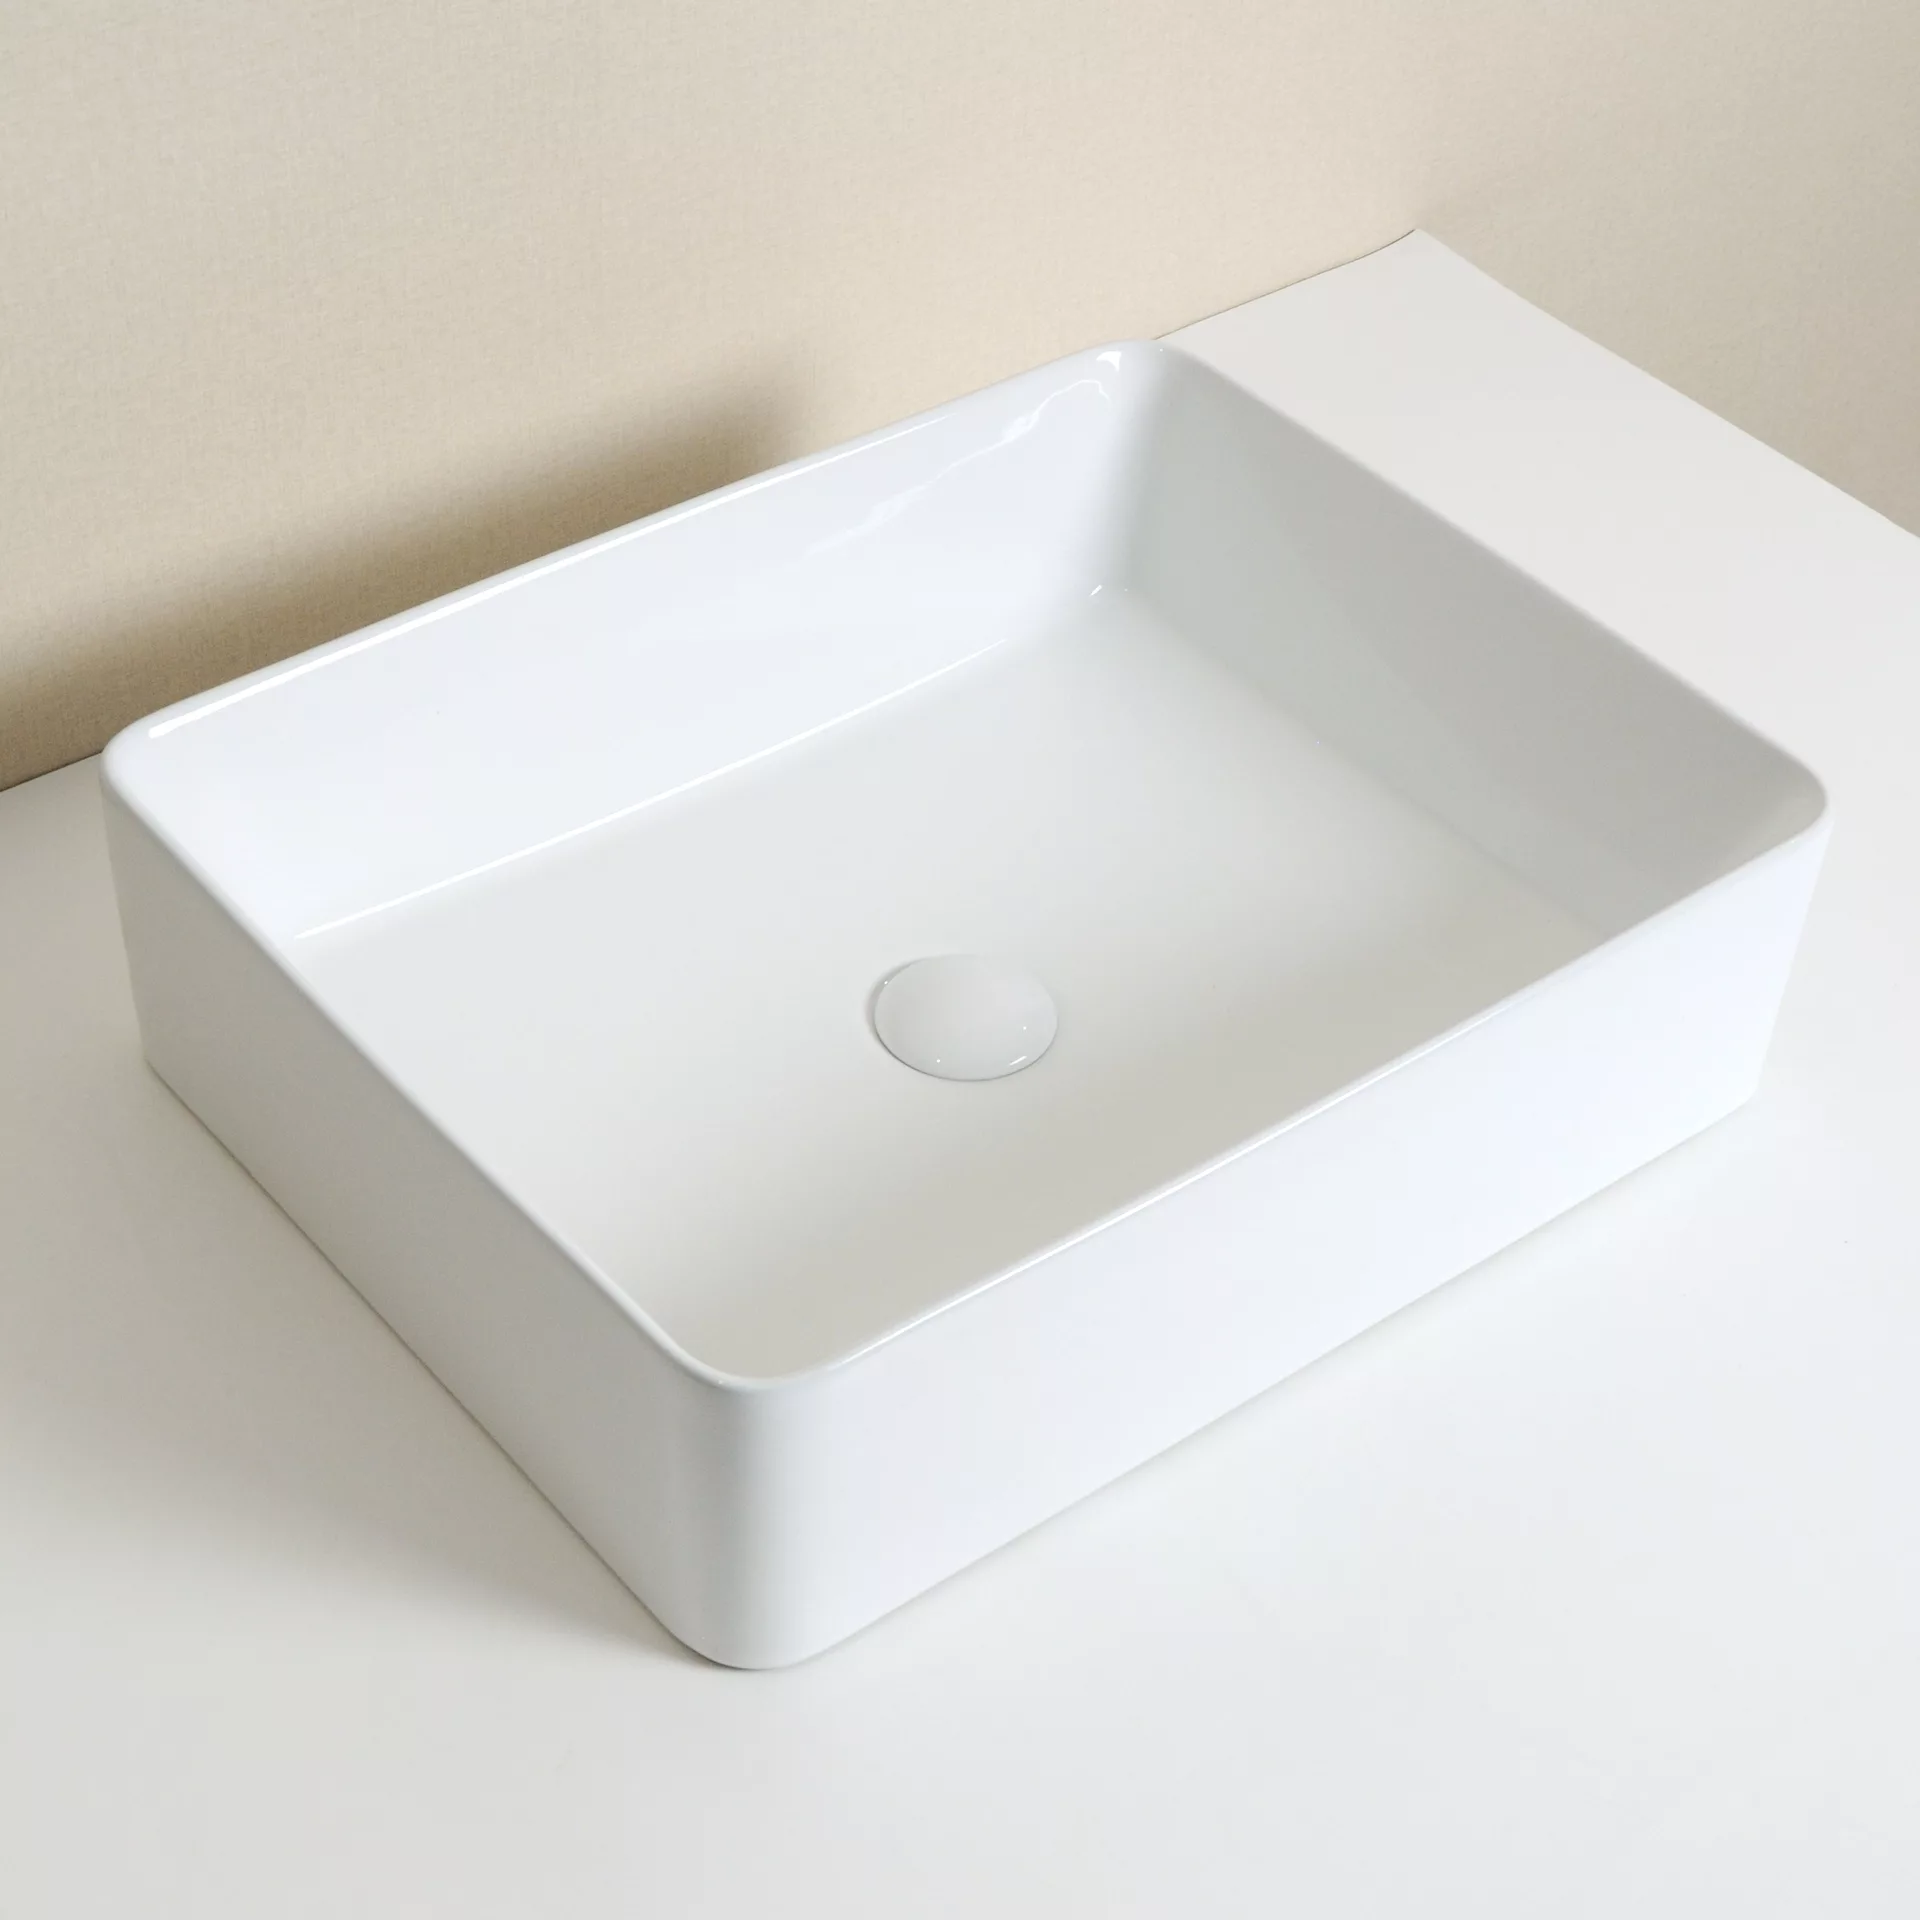 Накладная раковина для ванной GiD N9104 белая прямоугольная керамическая керамическая вставка ceracasa